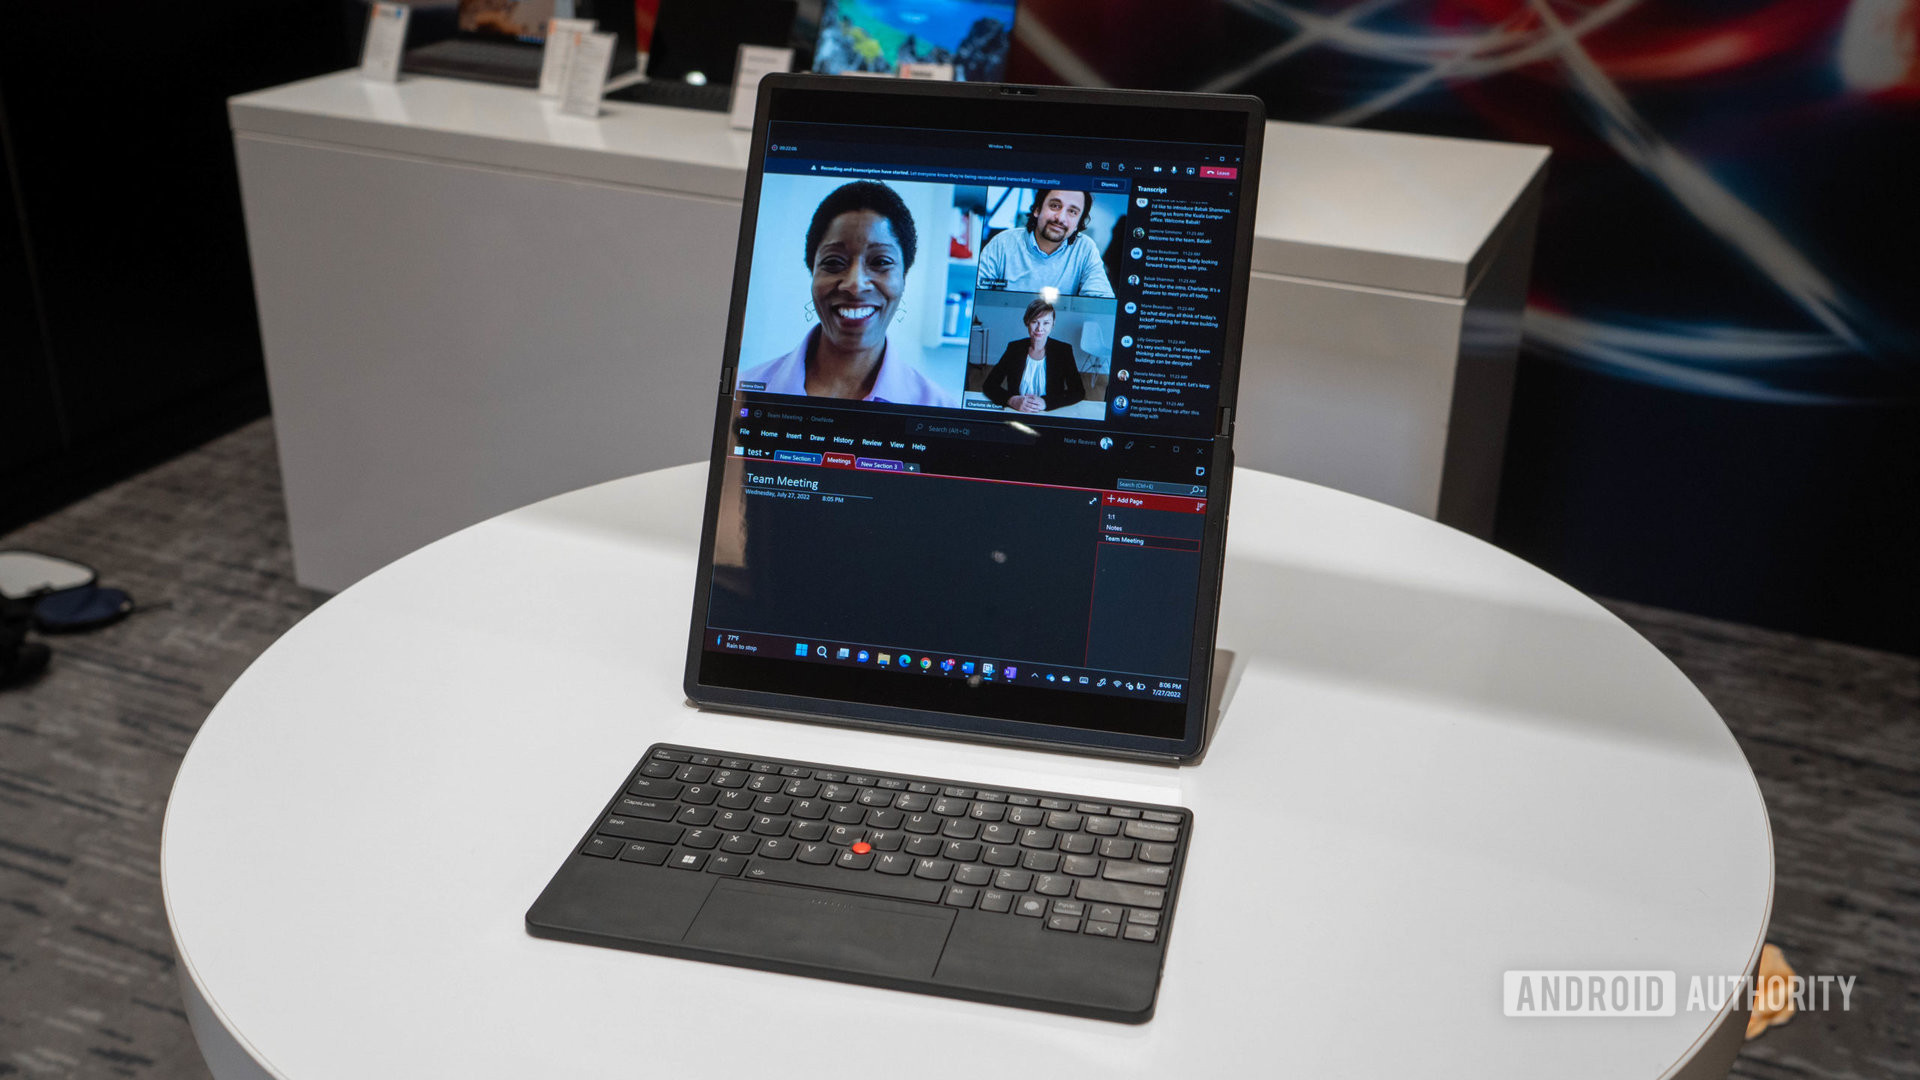 Lenovo X1 Fold in split screen portrait mode with keyboard